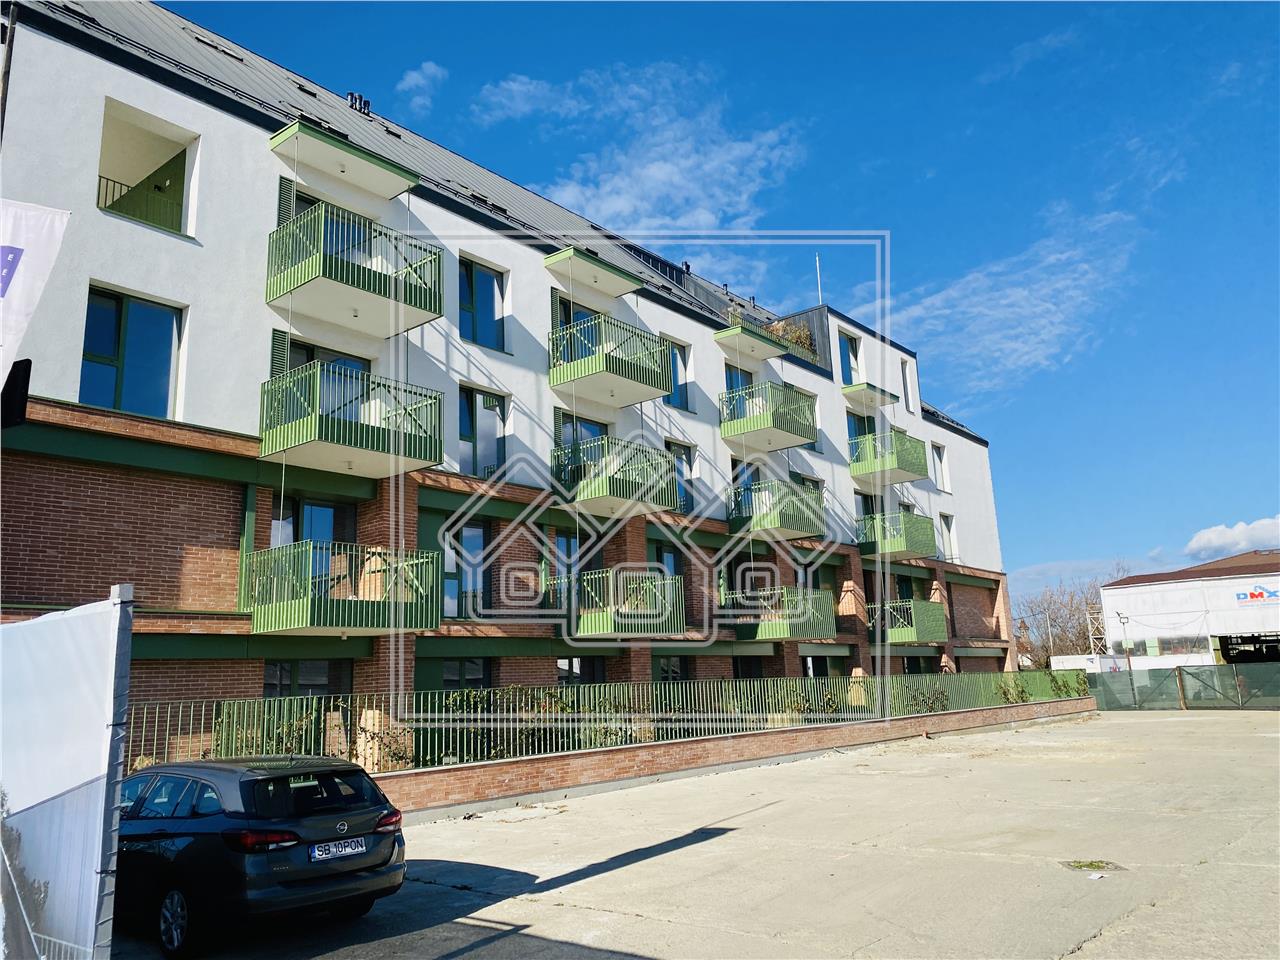 Apartament de vanzare in Sibiu - 4 camere - 3 bai - terasa 45 mp